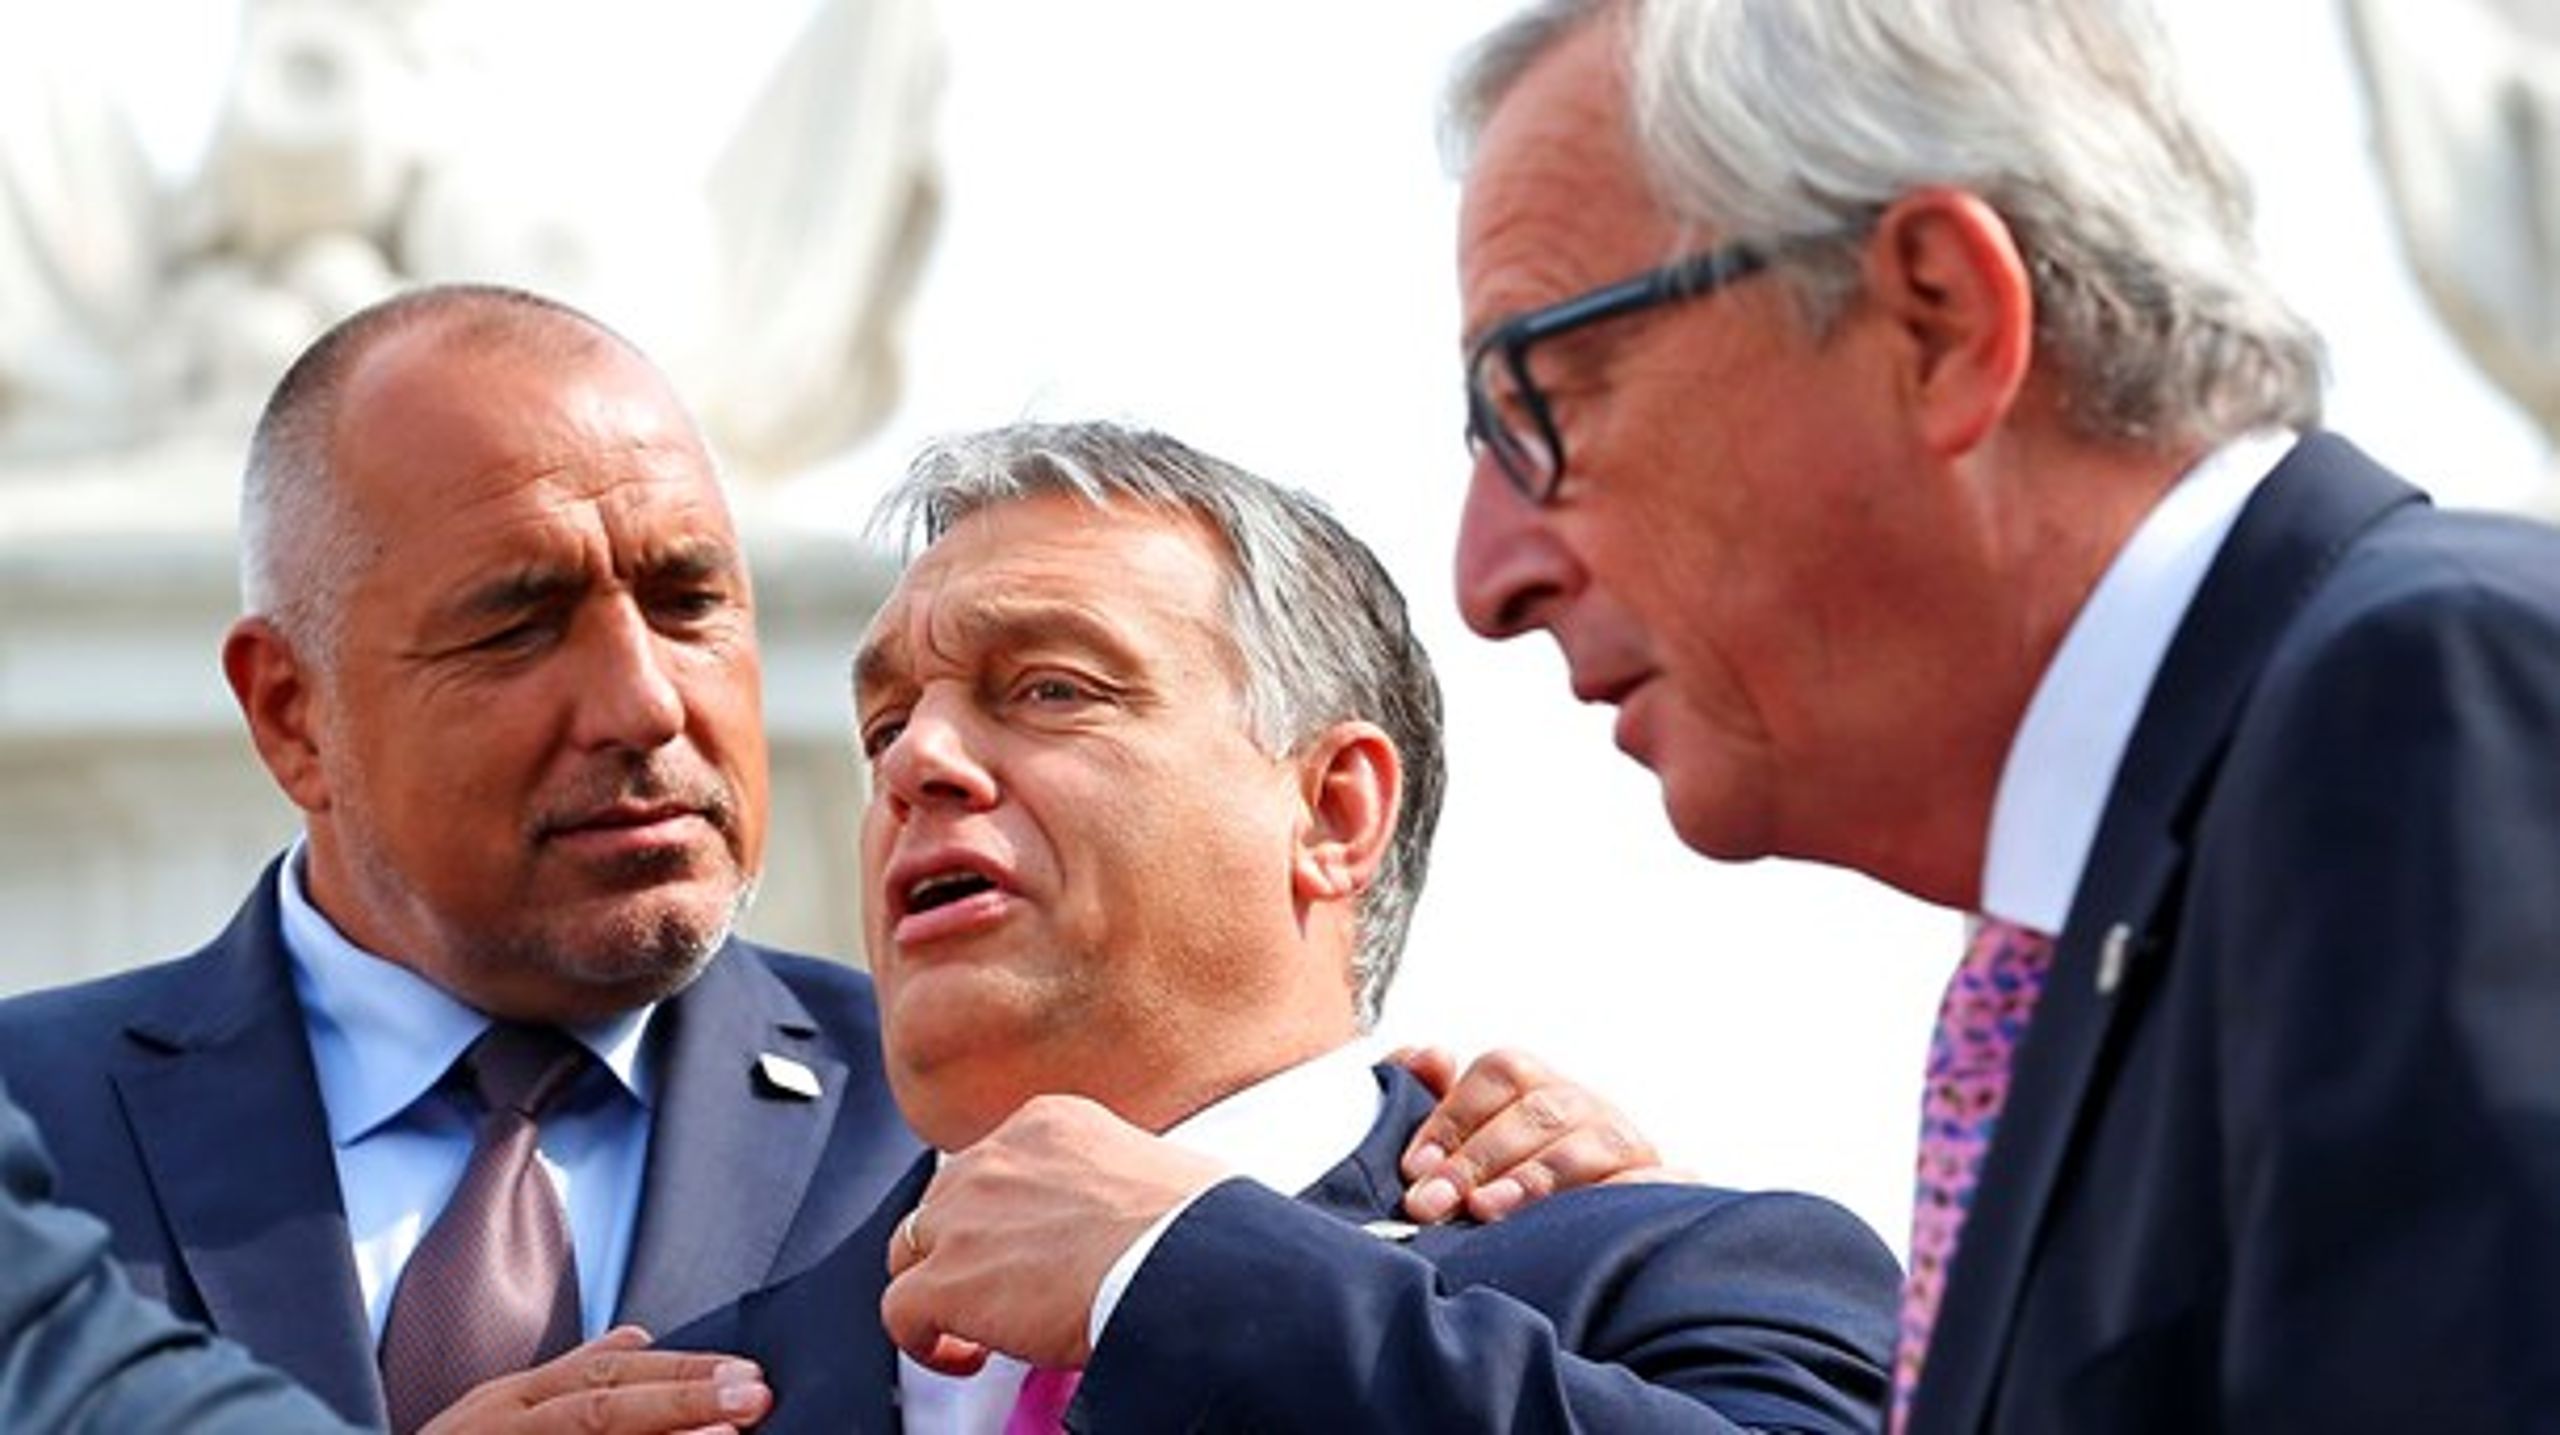 Særligt Bulgarien og Ungarn er kritiske over for Kommissionens forslag, der vil gøre det muligt at fratage EU-støtte til medlemsstater, der ikke overholder EU's retsstatsprincipper.&nbsp;Fra højre mod venstre: Bulgariens premierminister Boyko Borisov, Ungarns premierminister Viktor Orban og Kommissionsformand Jean-Claude Juncker.